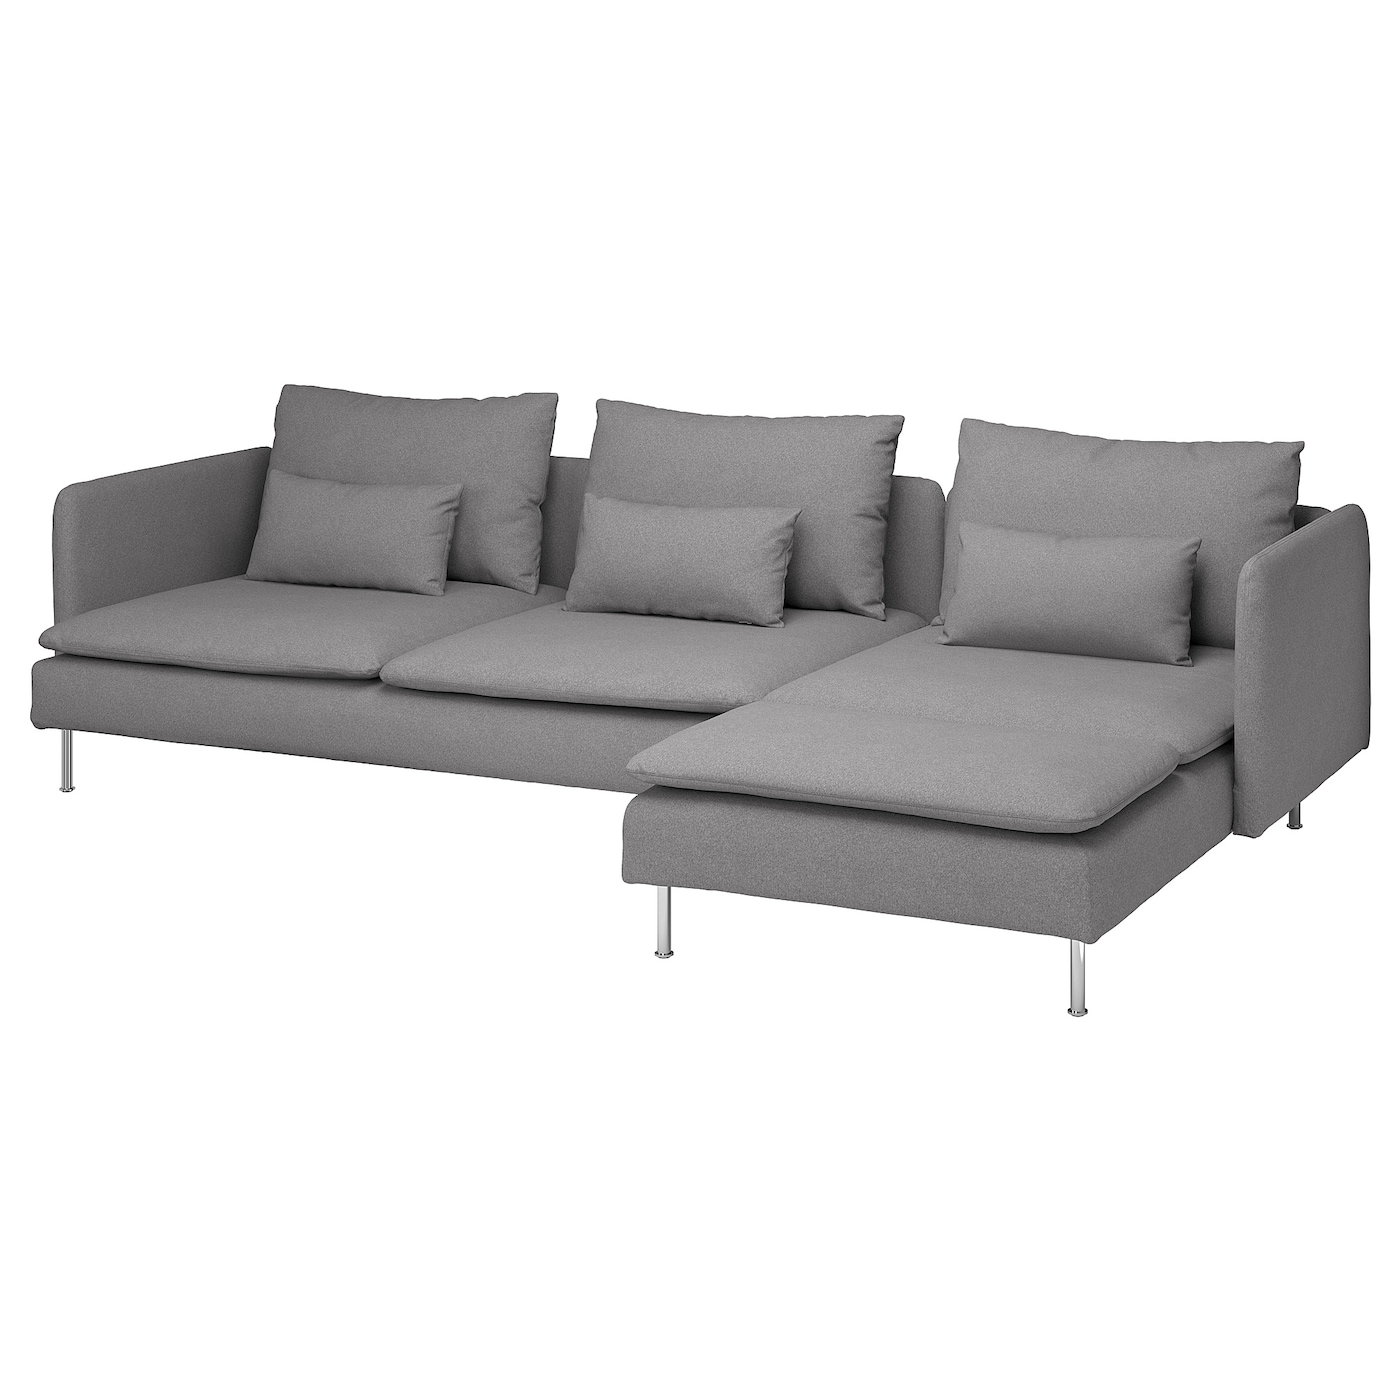 3-местный диван и козетка - IKEA SÖDERHAMN/SODERHAMN, 99x291см, серый, СЕДЕРХАМН ИКЕА